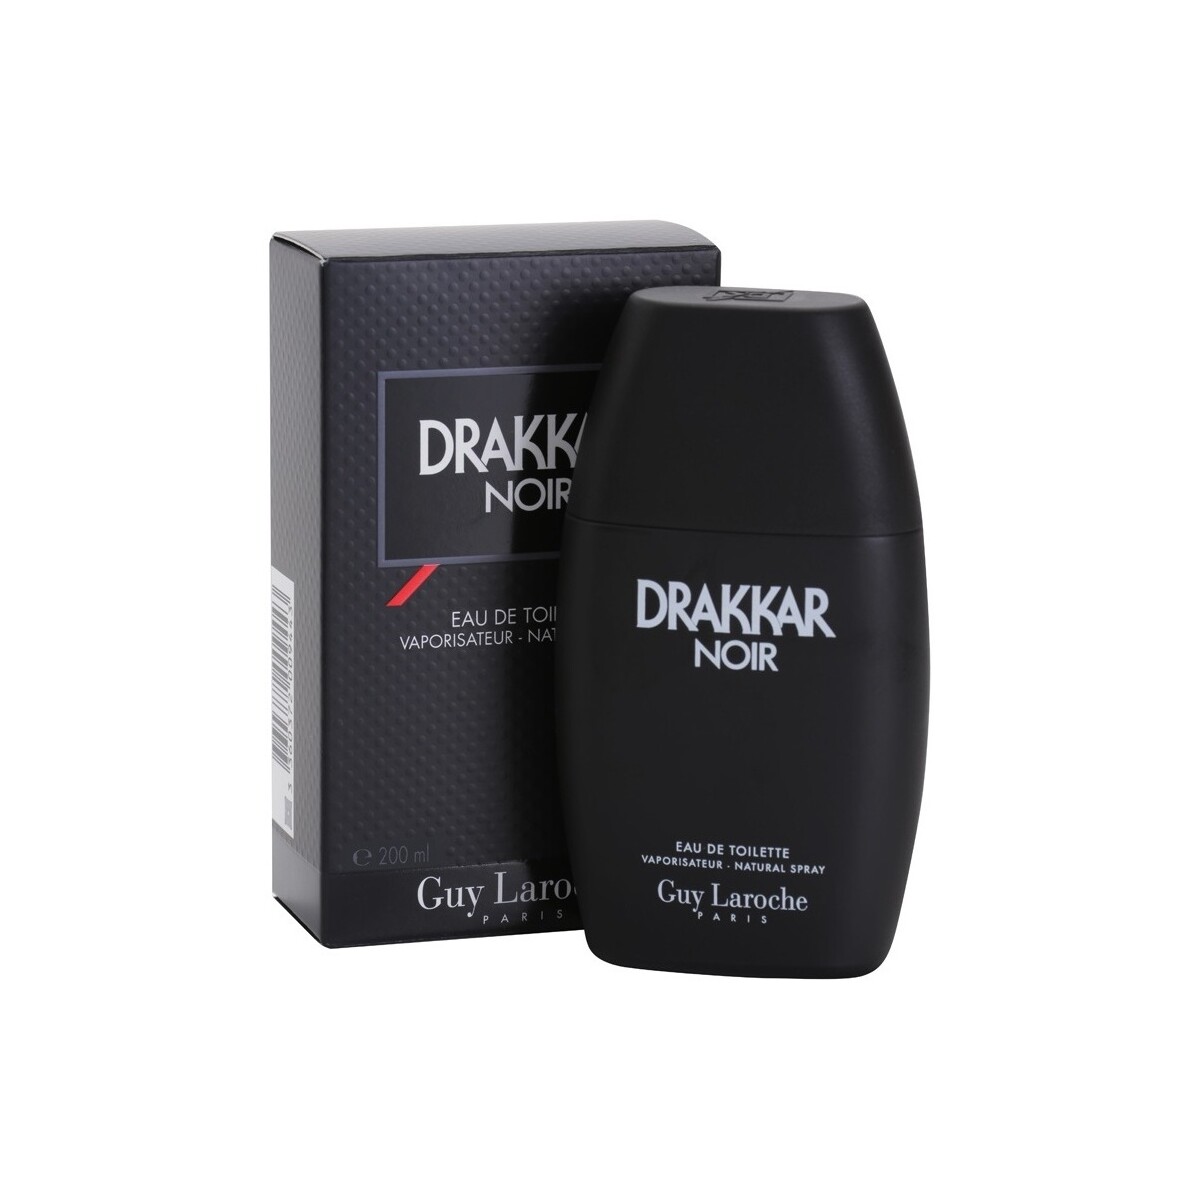 Beauté Homme Cologne Guy Laroche Drakkar Noir - eau de toilette - 200ml - vaporisateur Drakkar Noir - cologne - 200ml - spray